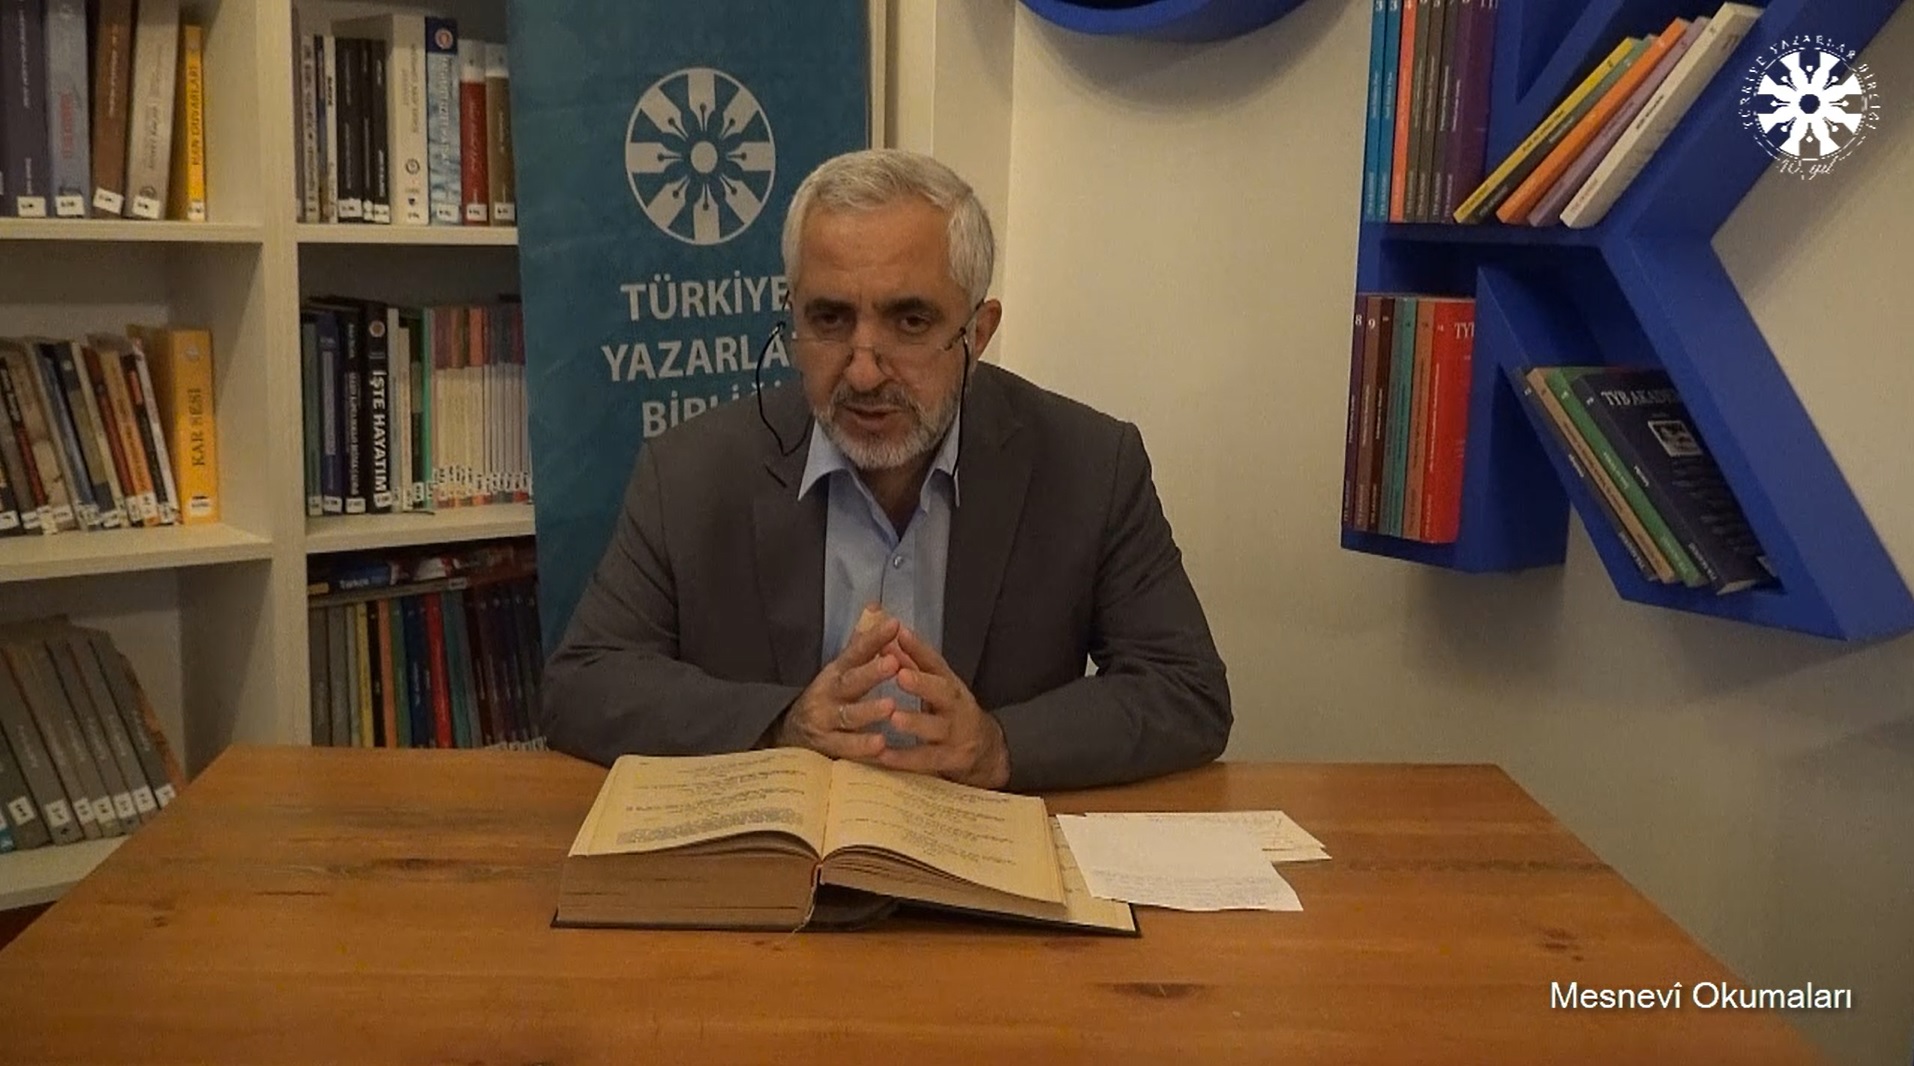 Mesnevî Okumaları -76- Prof. Dr. Zülfikar Güngör